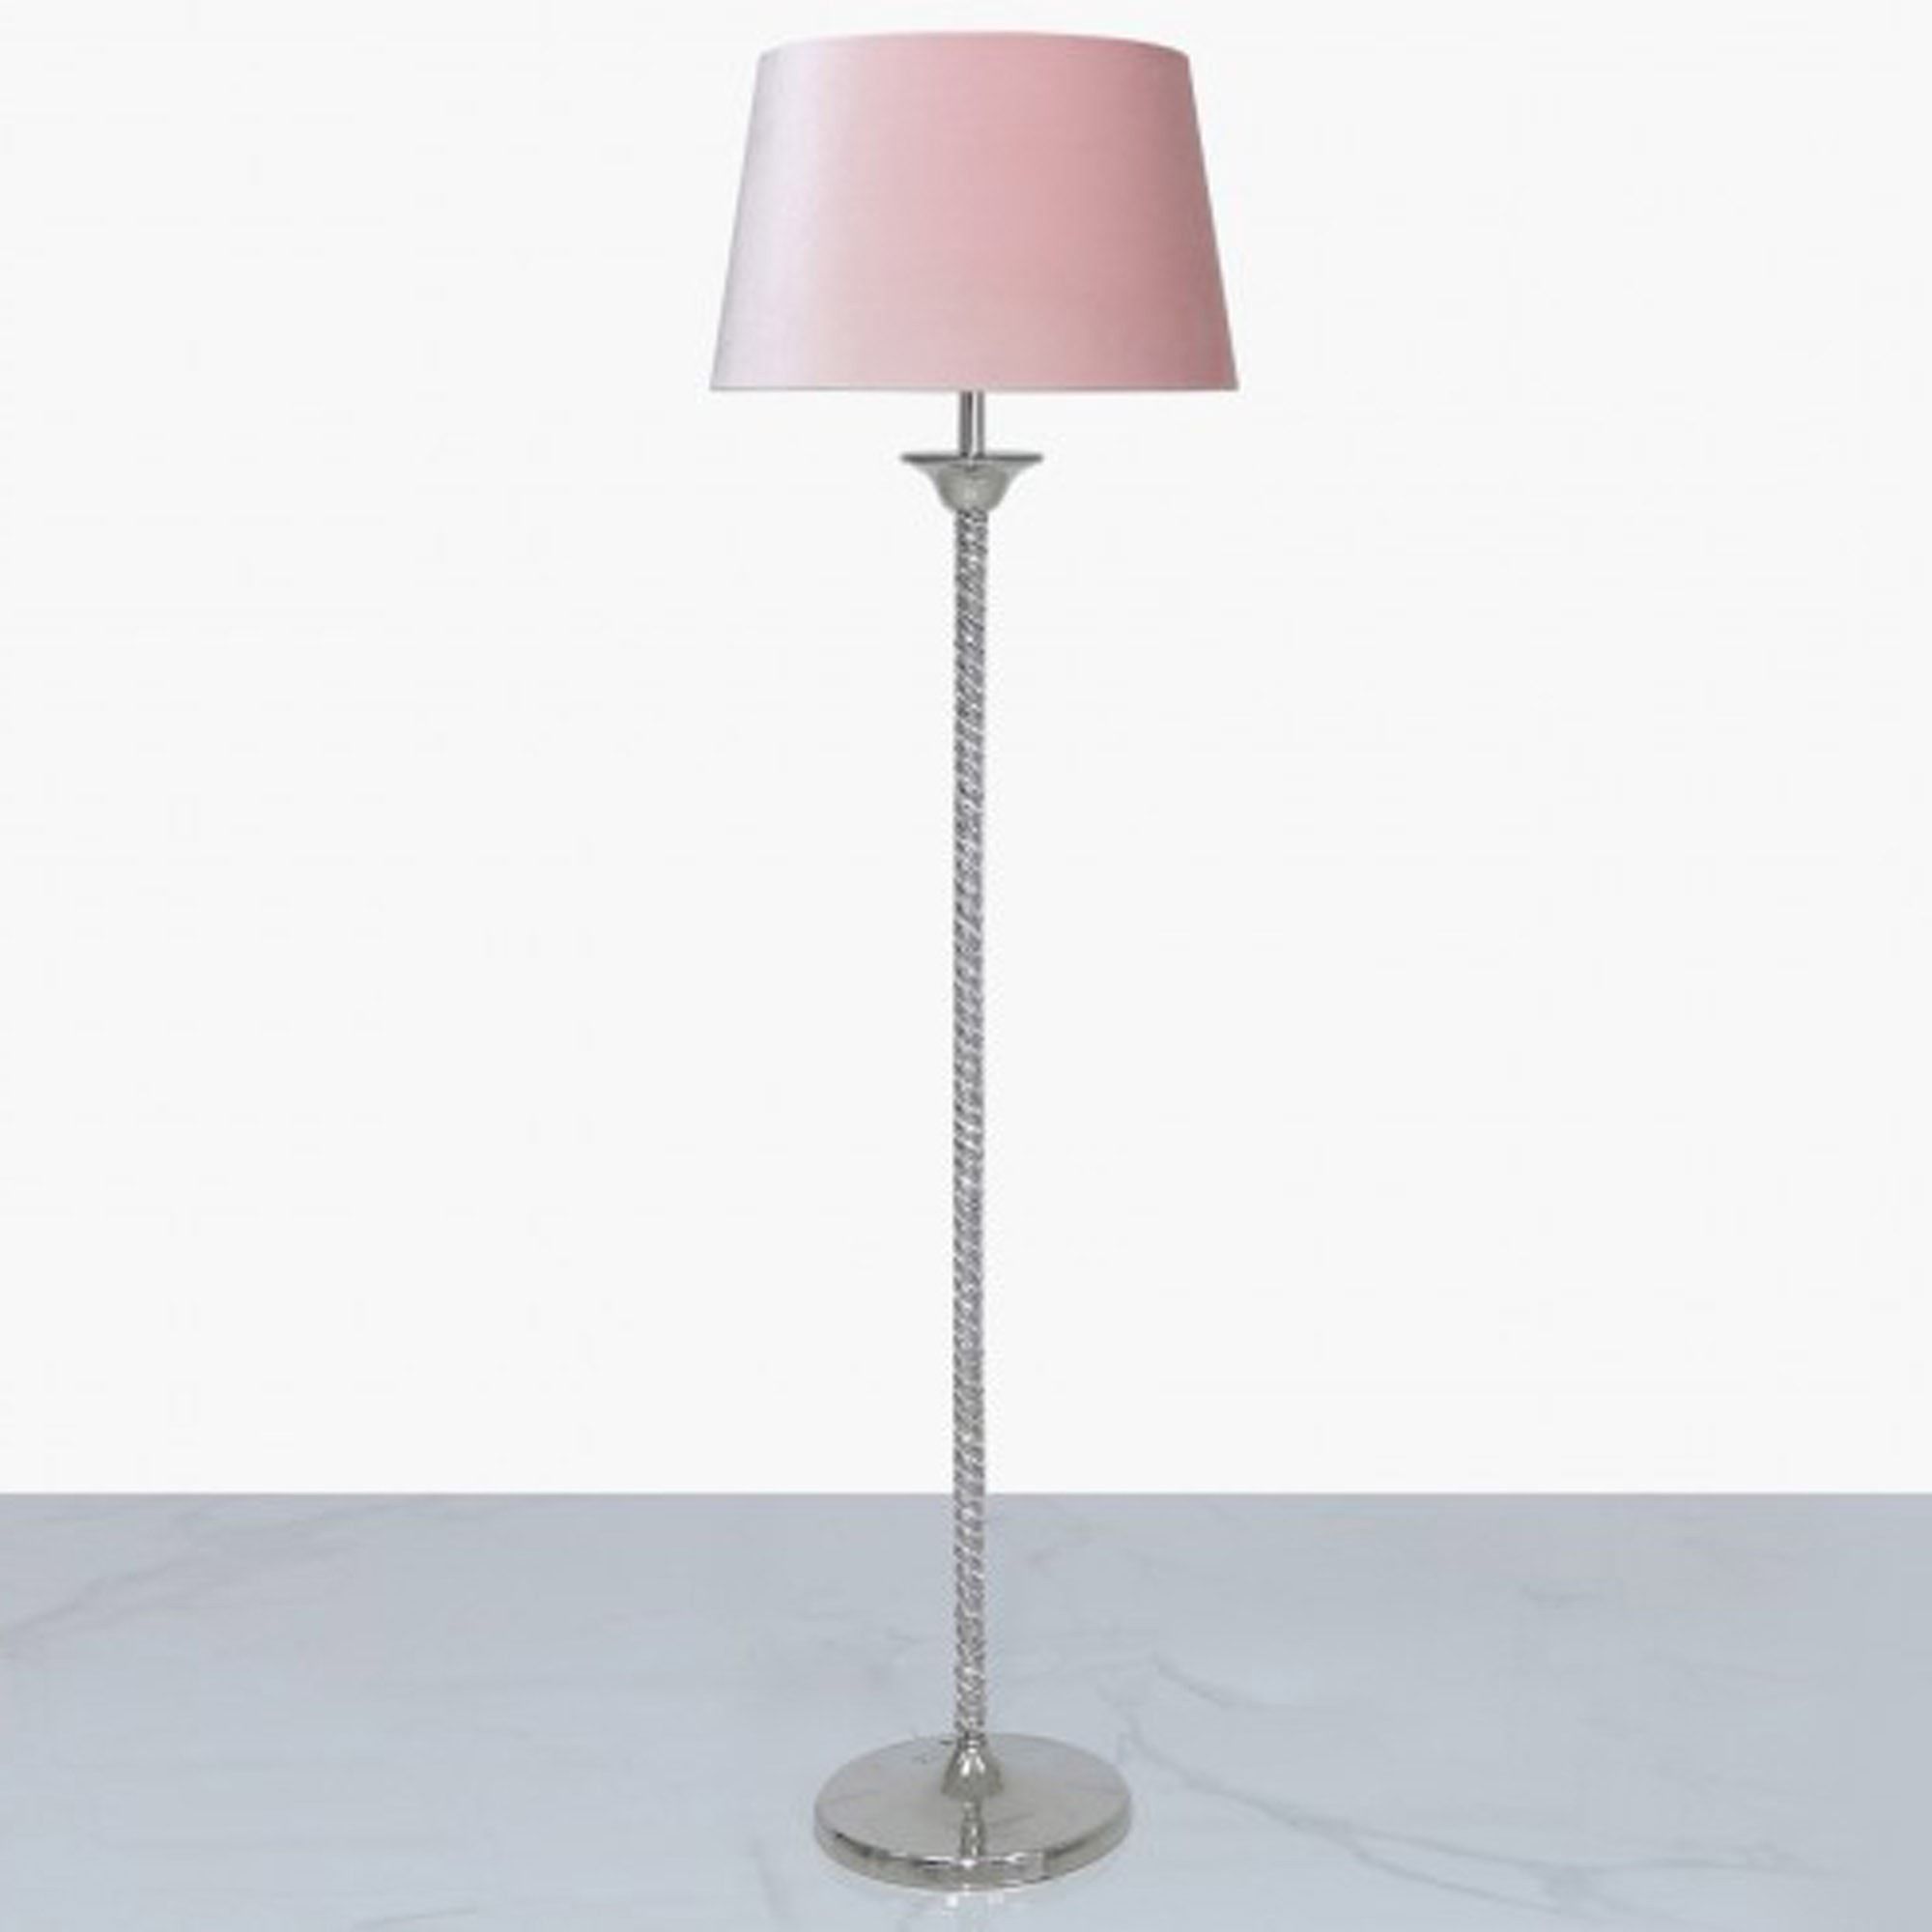 Glitz Twist Floor Lamp With Blush Pink Velvet Shade | Floor Lamps Within Pink Floor Lamps (View 2 of 20)